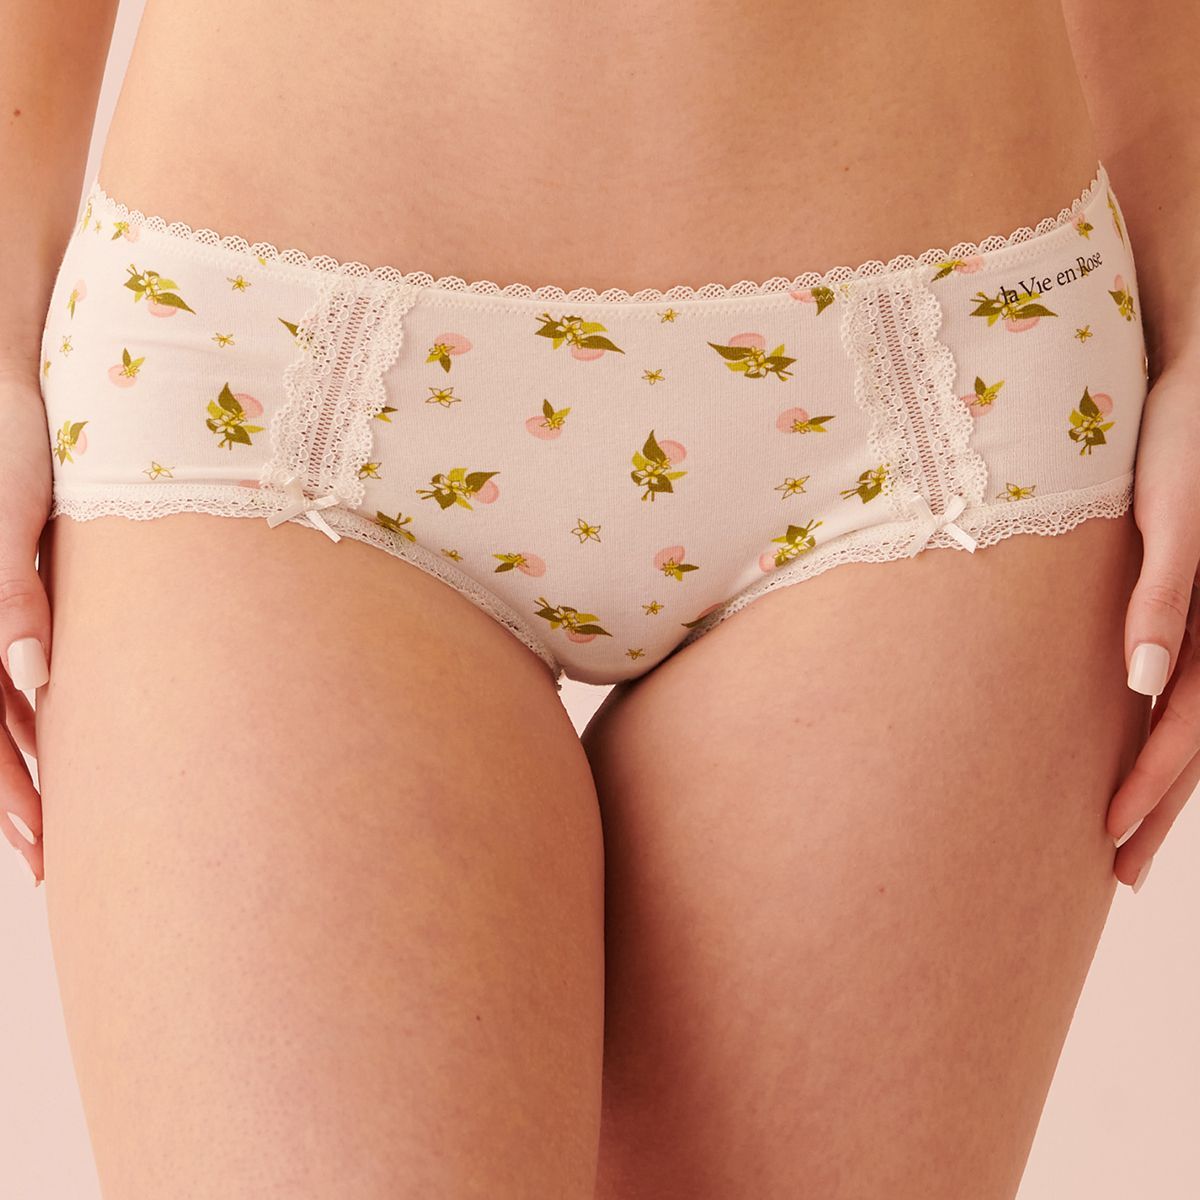 Buy La Vie En Rose Cotton and Lace Detail Hiphugger Panty online